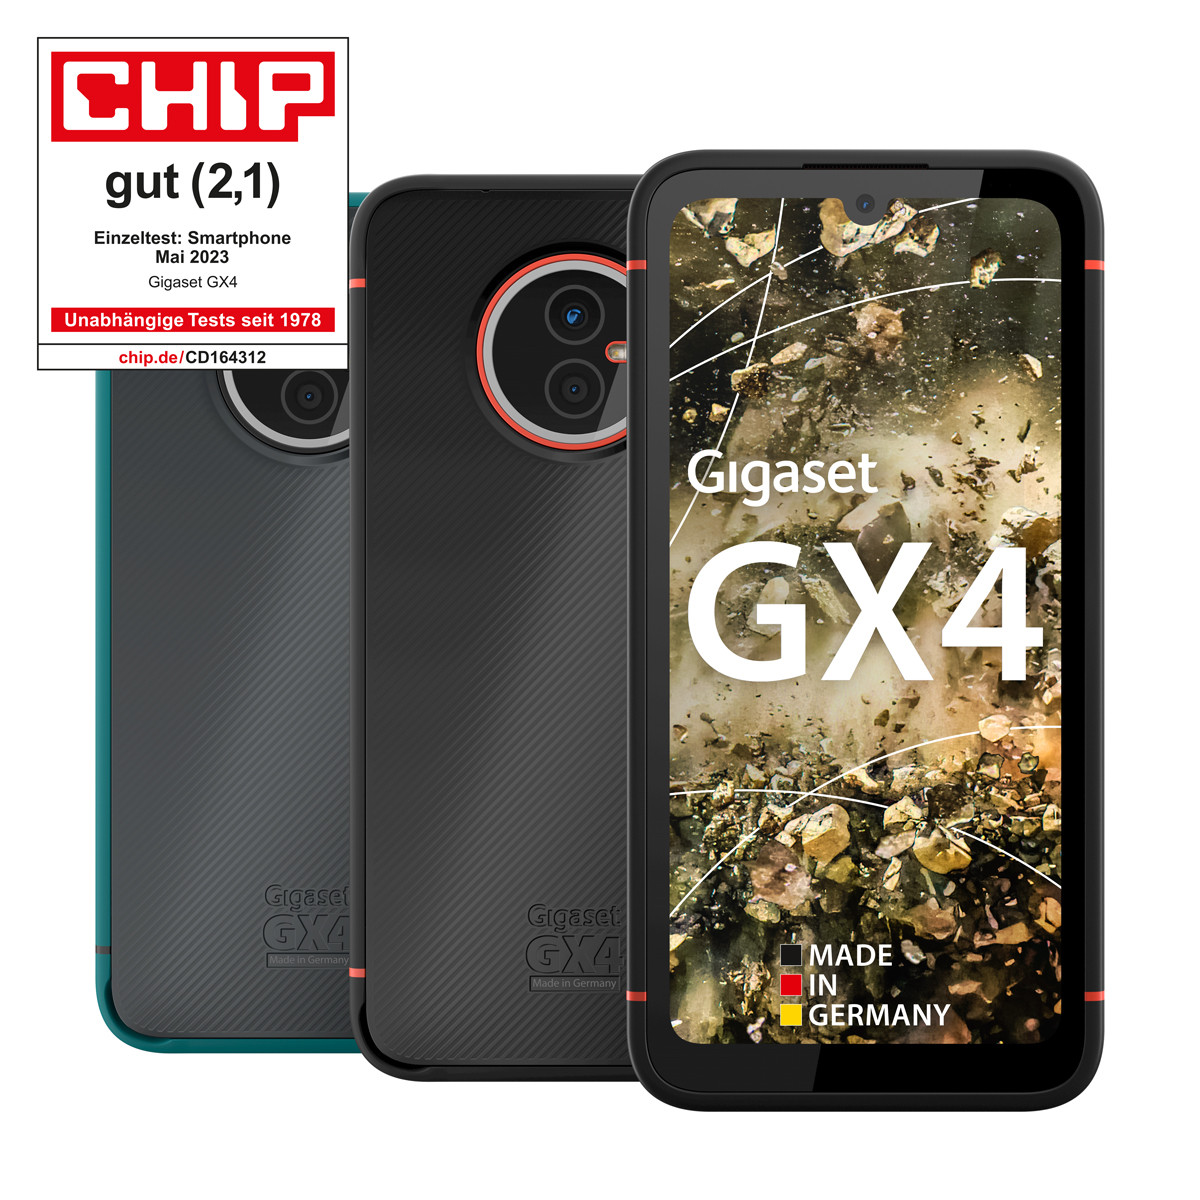 Das Outdoor-Smartphone GX4 online kaufen | Gigaset